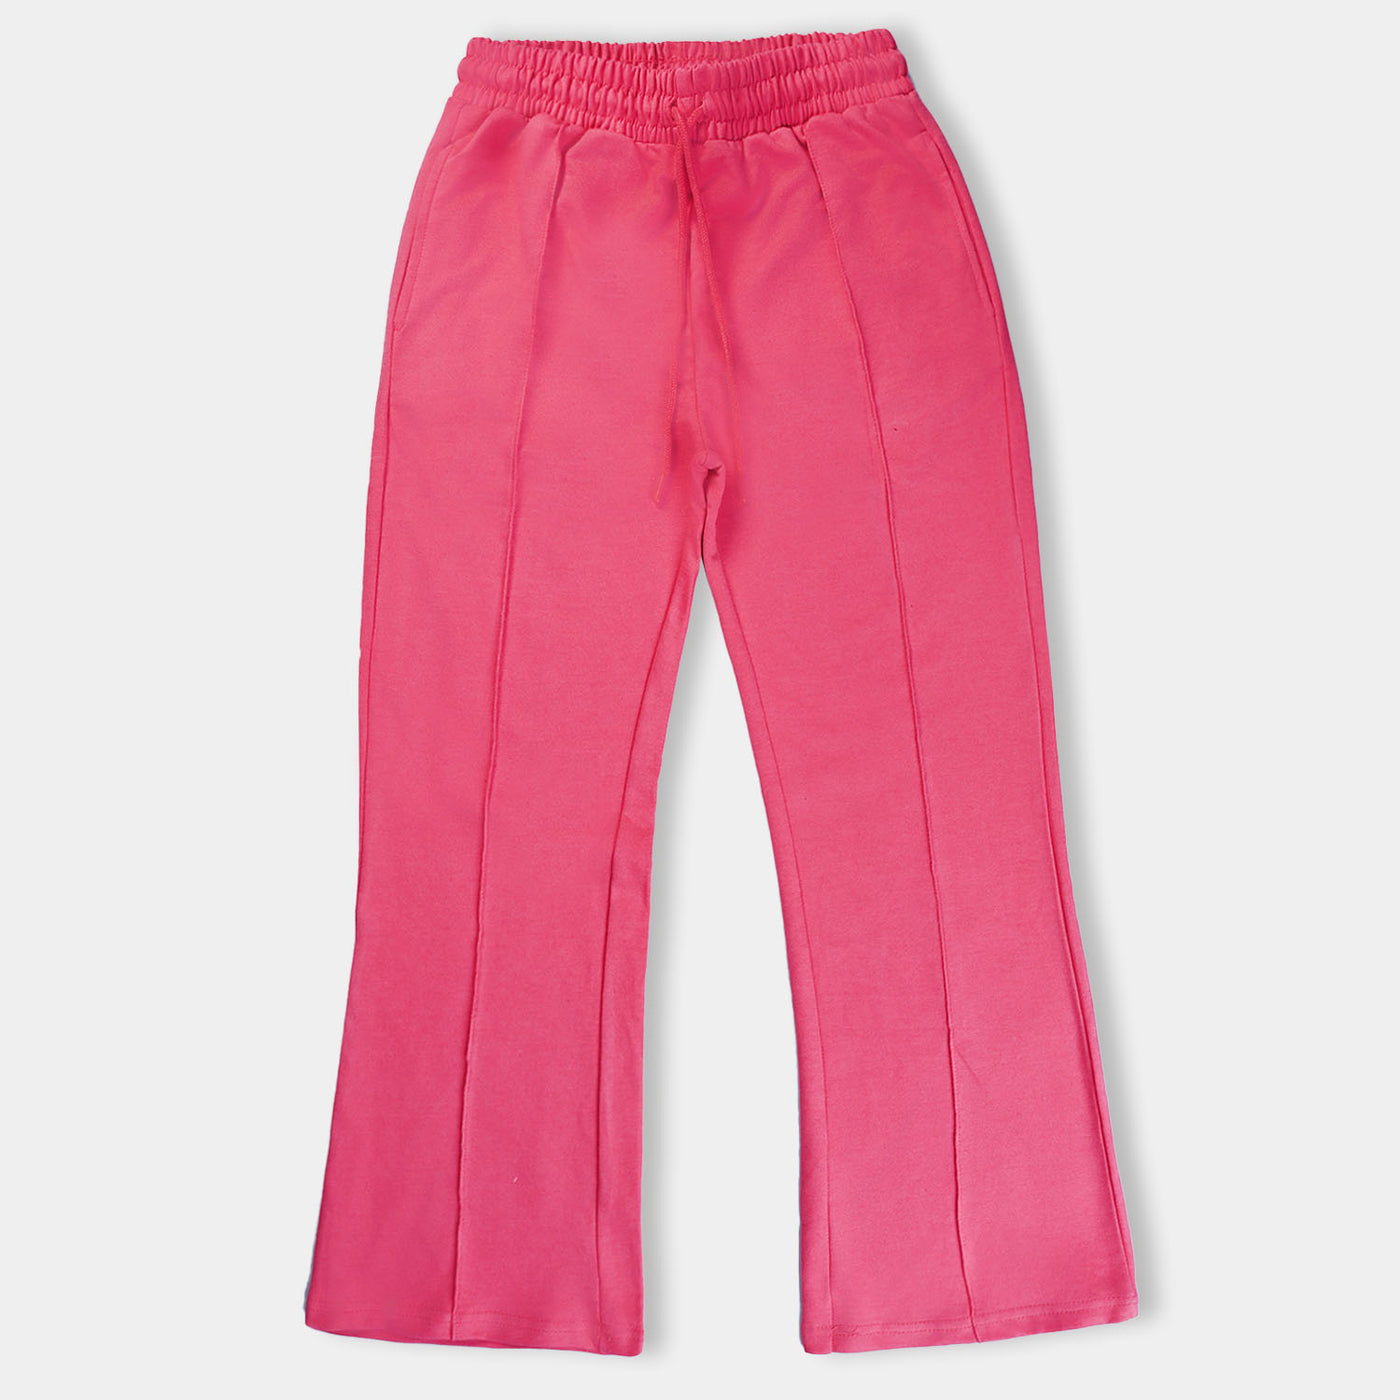 Teens Girls Fleece Knitted Trouser Hot Pink